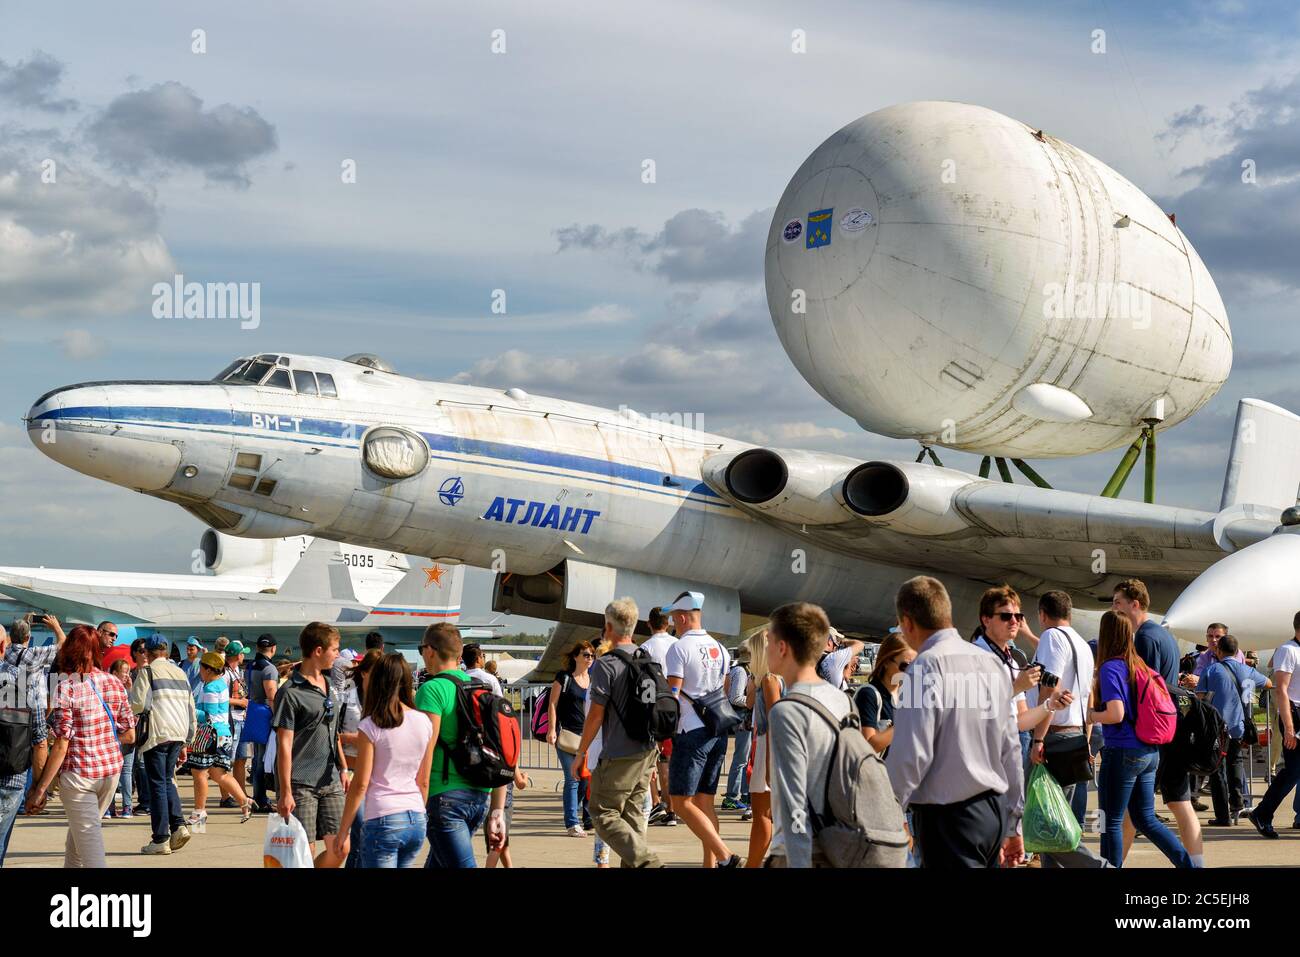 RÉGION DE MOSCOU - 28 AOÛT 2015 : l'avion de transport aérien stratégique soviétique Myaishchev VM-T Atlant au salon international de l'aviation et de l'espace (MAKS) à Banque D'Images